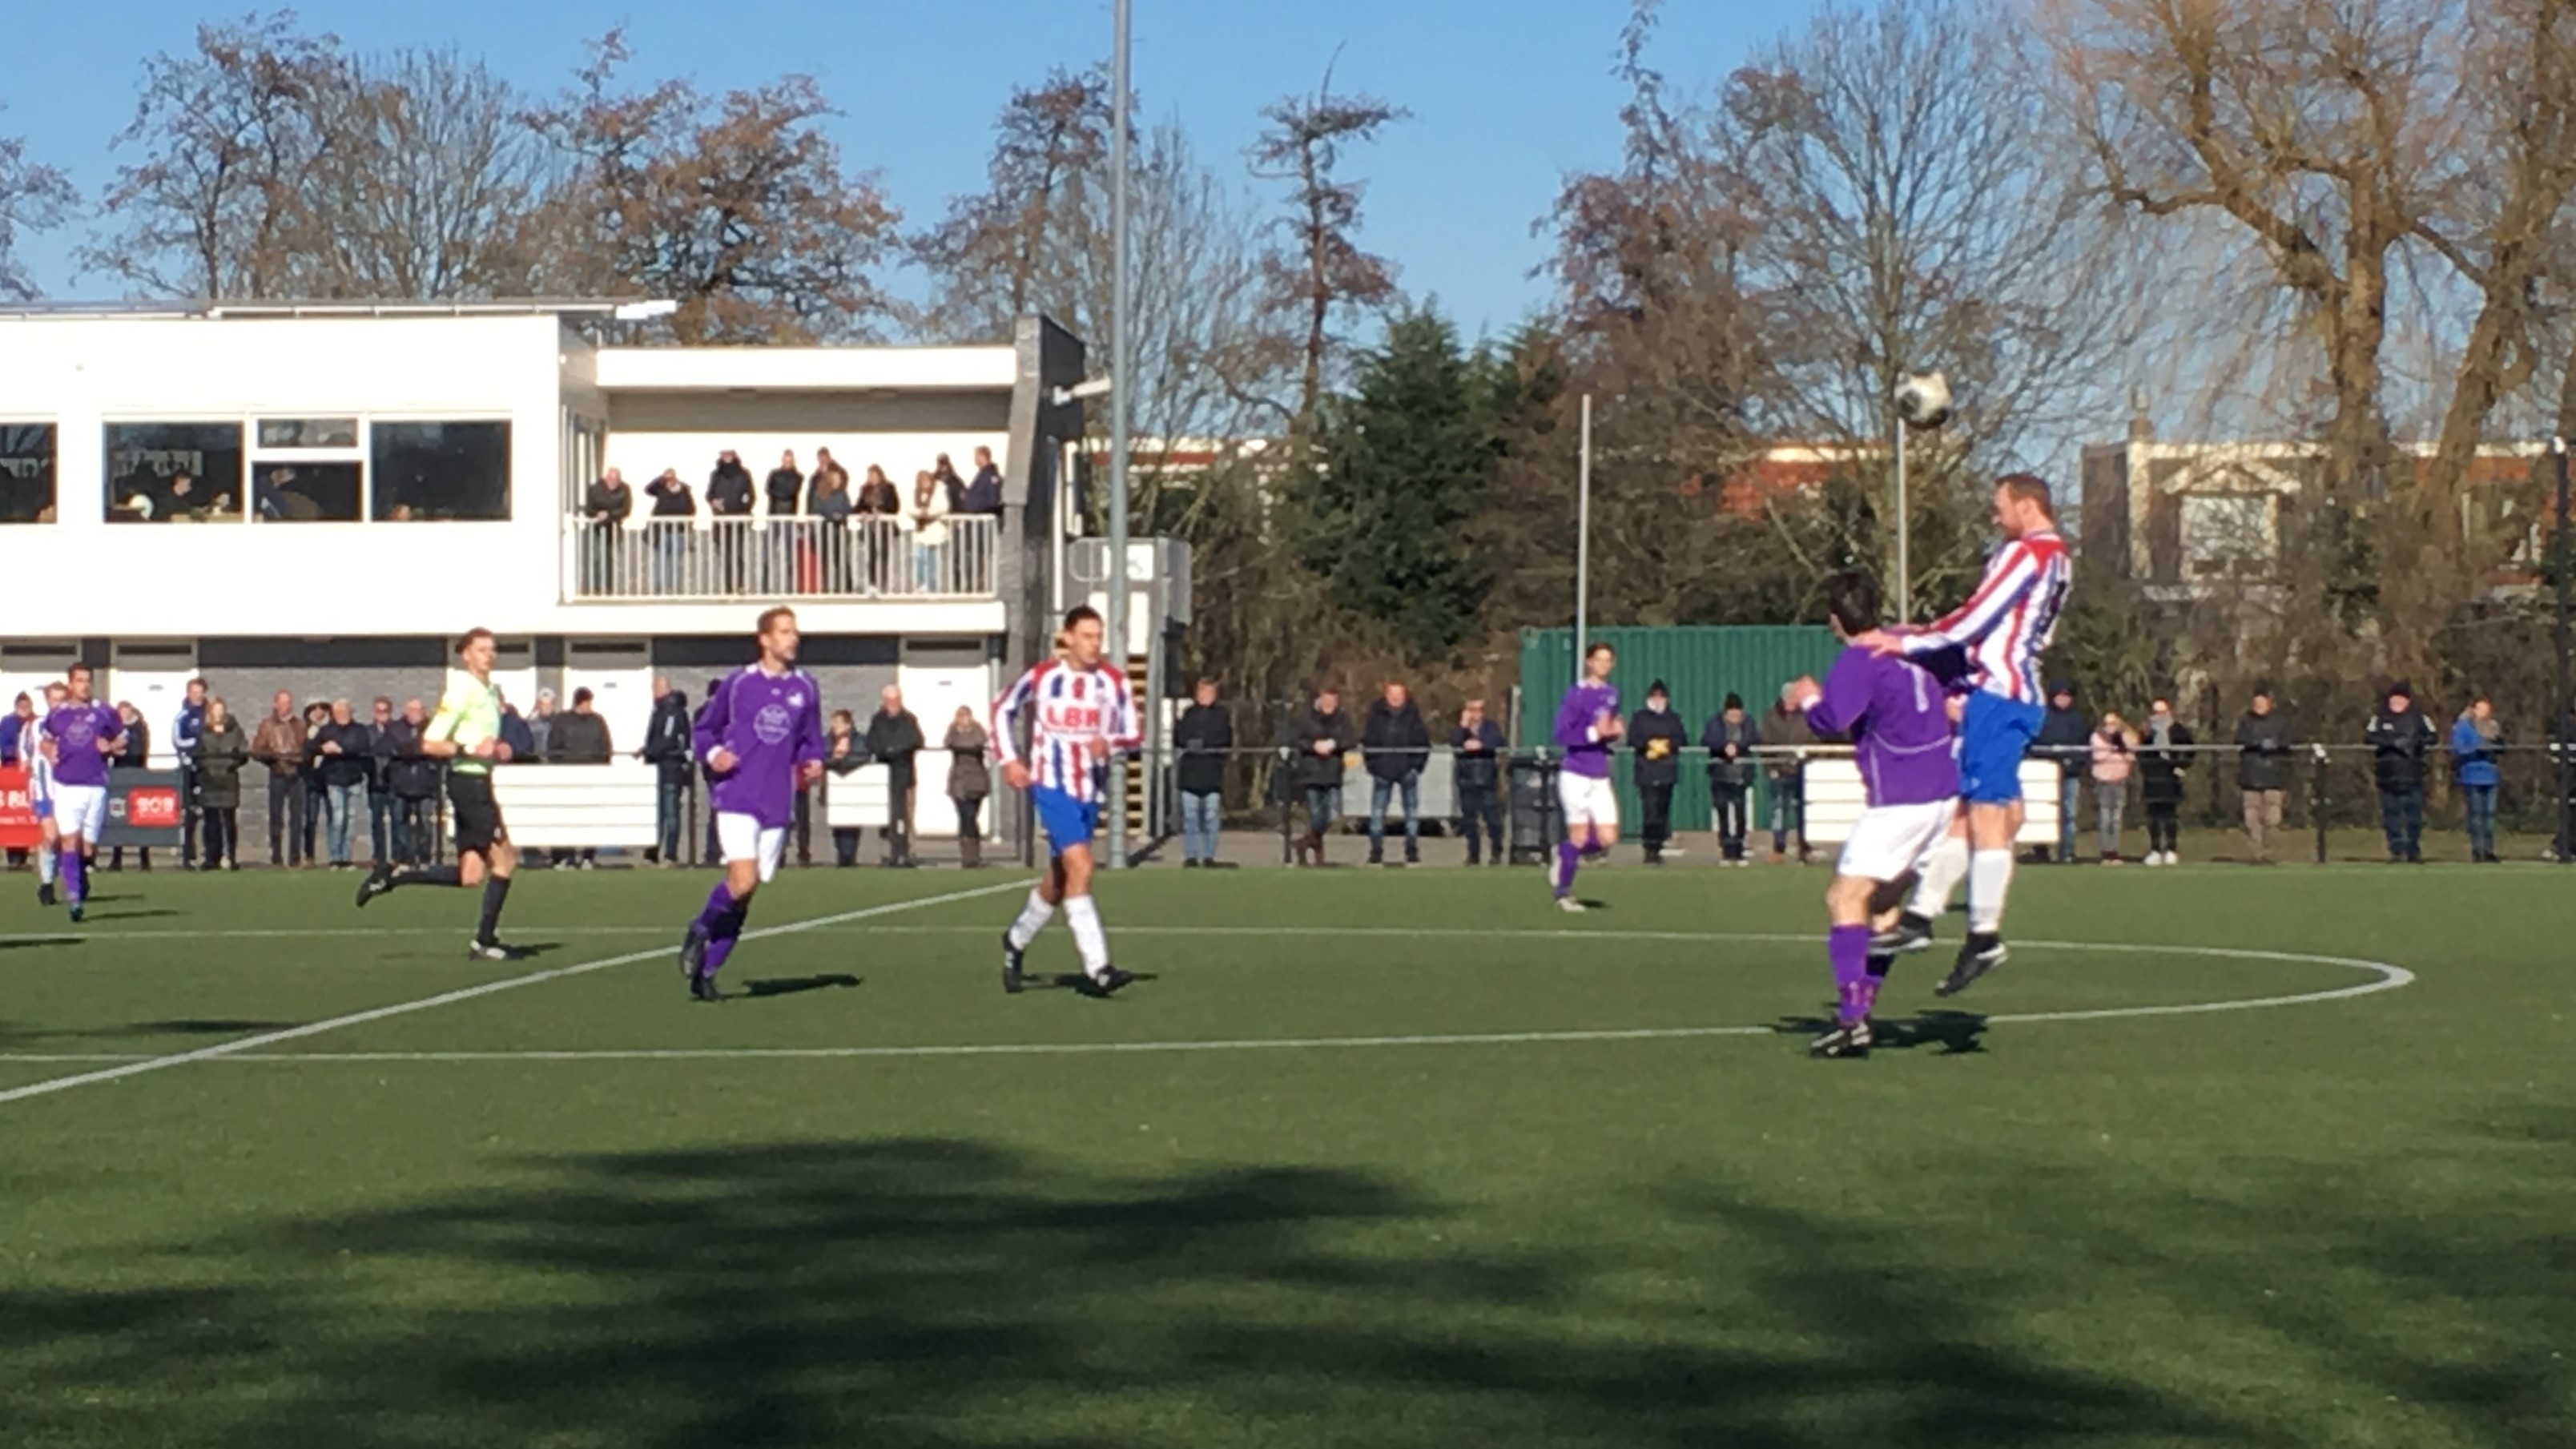 VVH-Spaarnwoude-Voetbal-in-Haarlem